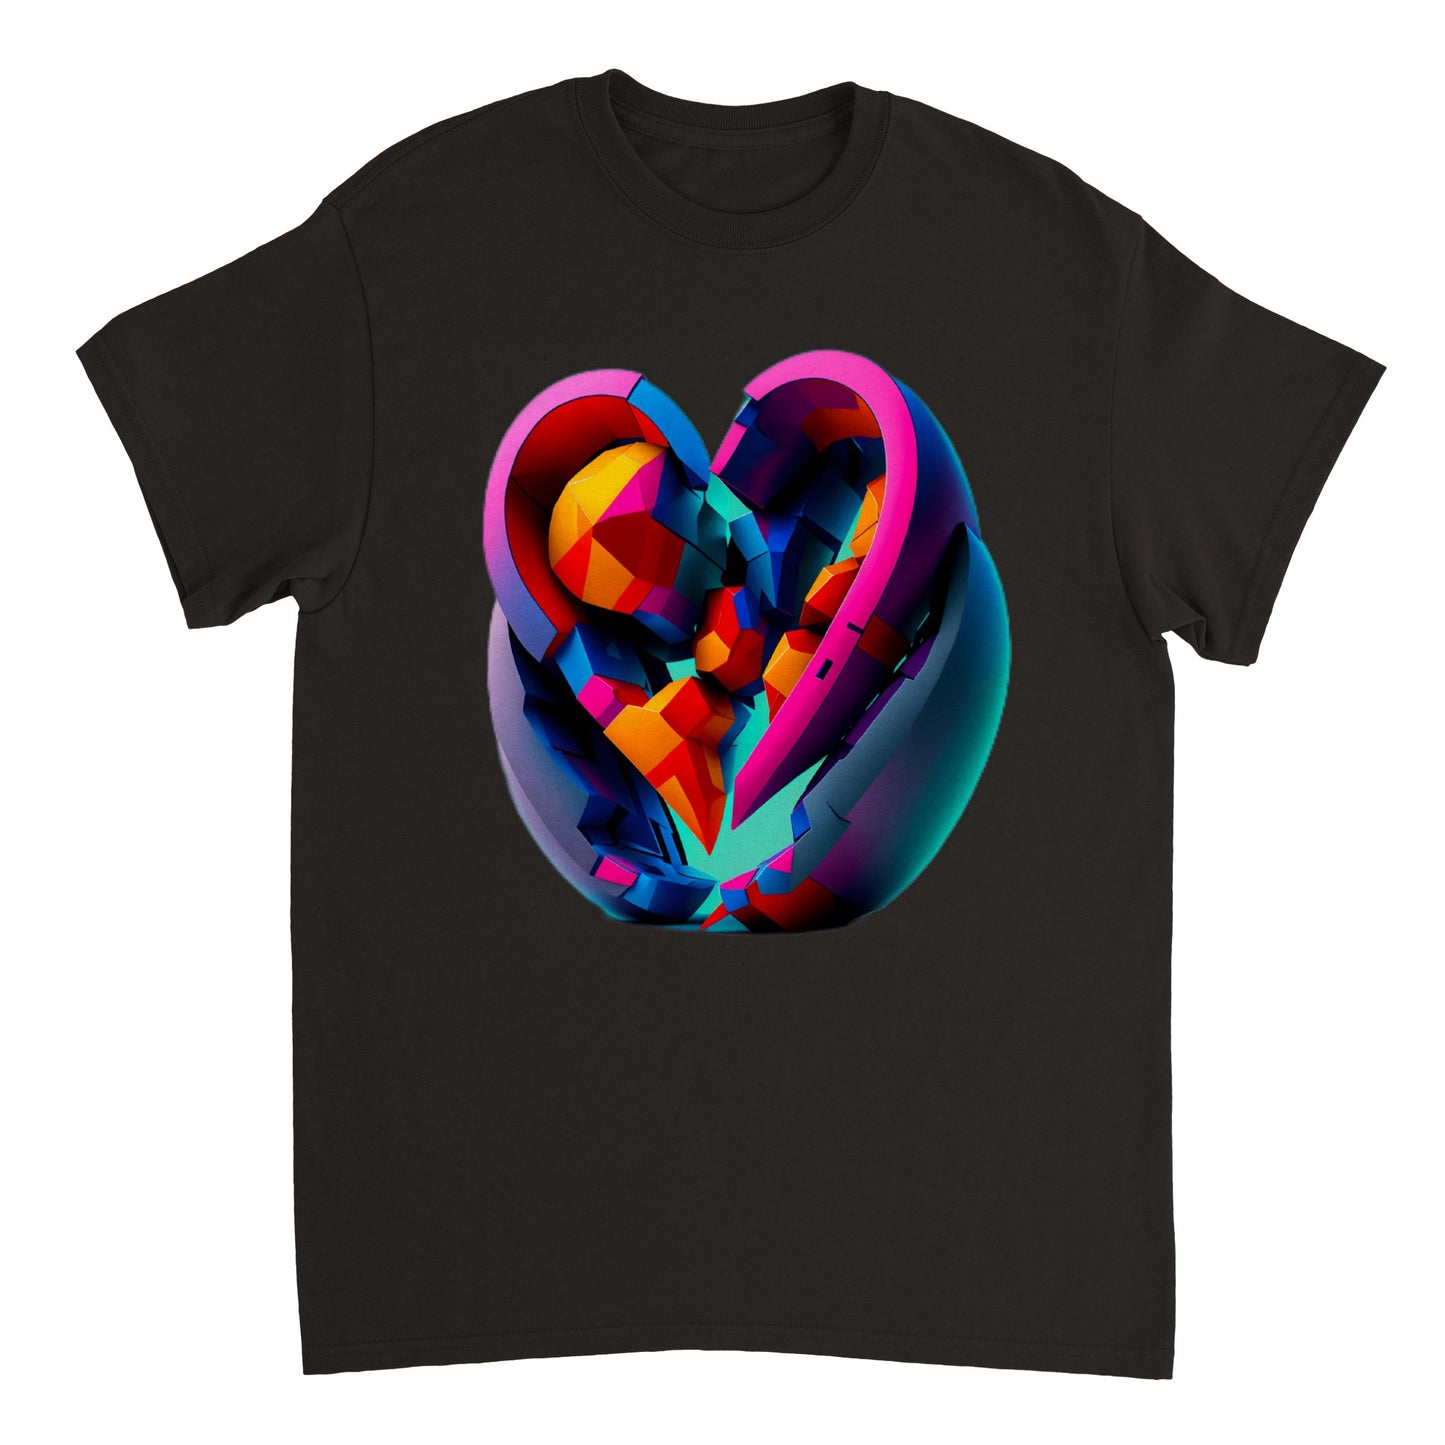 Love Heart - Heavyweight Unisex Crewneck T-shirt 30